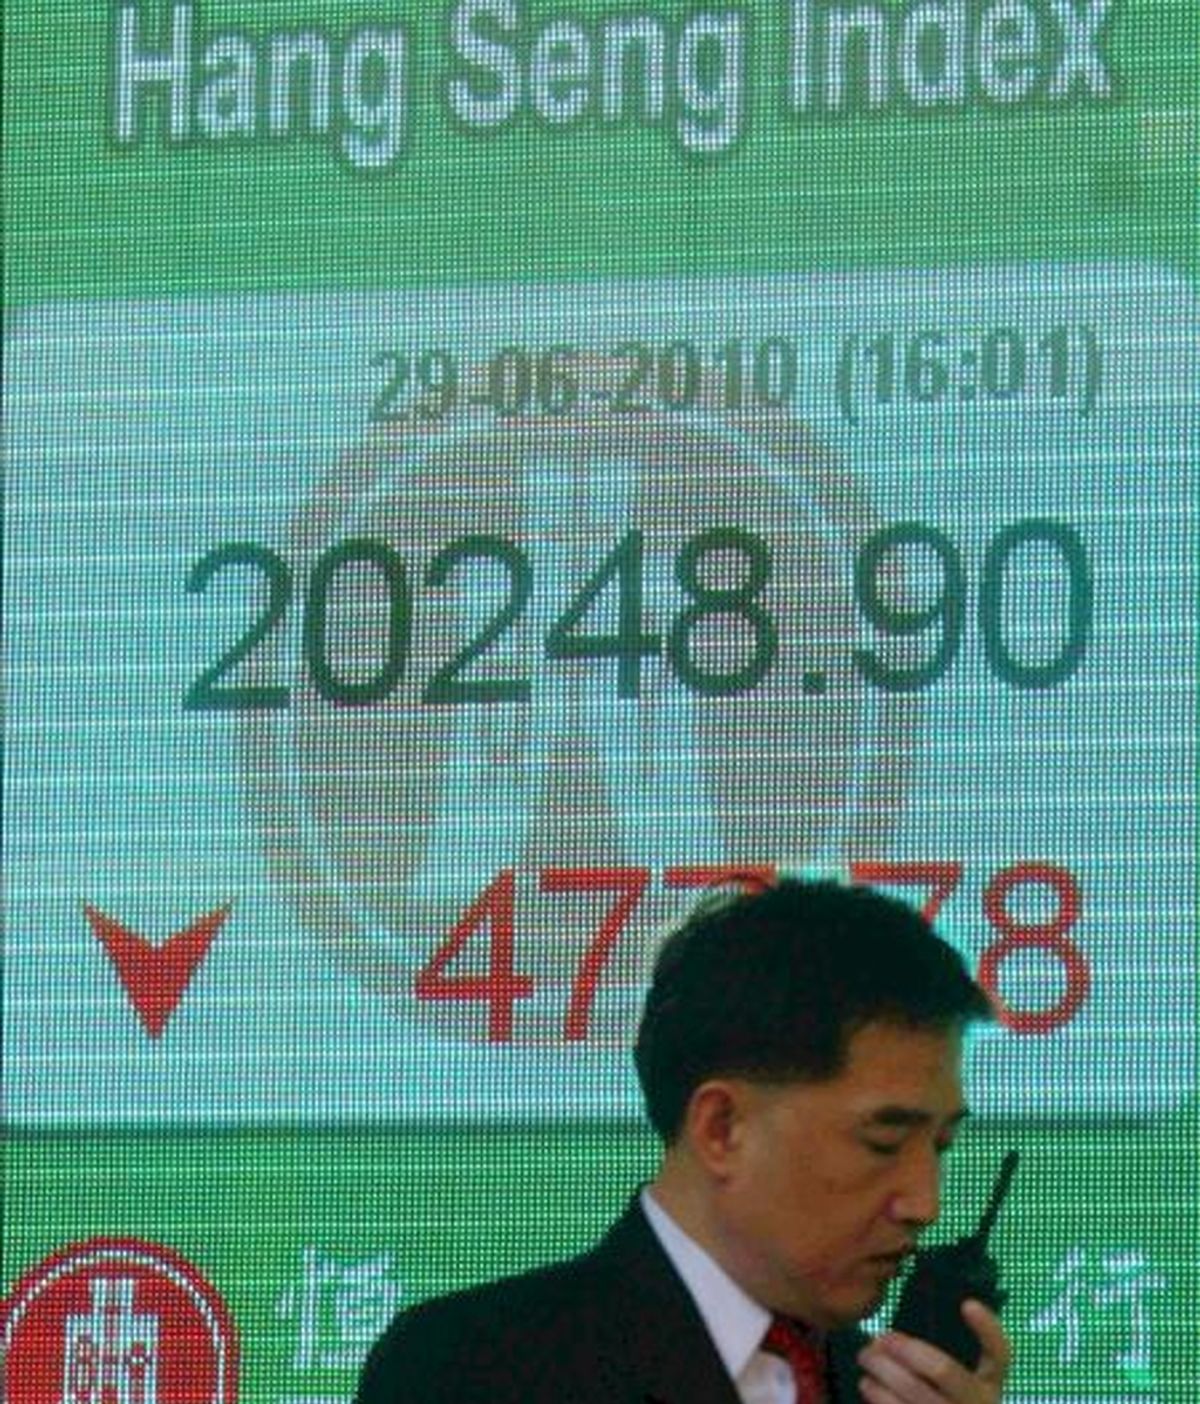 Un hombre pasa delante de un panel electrónico de una sucursal bancaria de Hong Kong (China) que muestra el valor alcanzado por el índice Hang Seng de la Bolsa de Hong Kong. EFE/Archivo